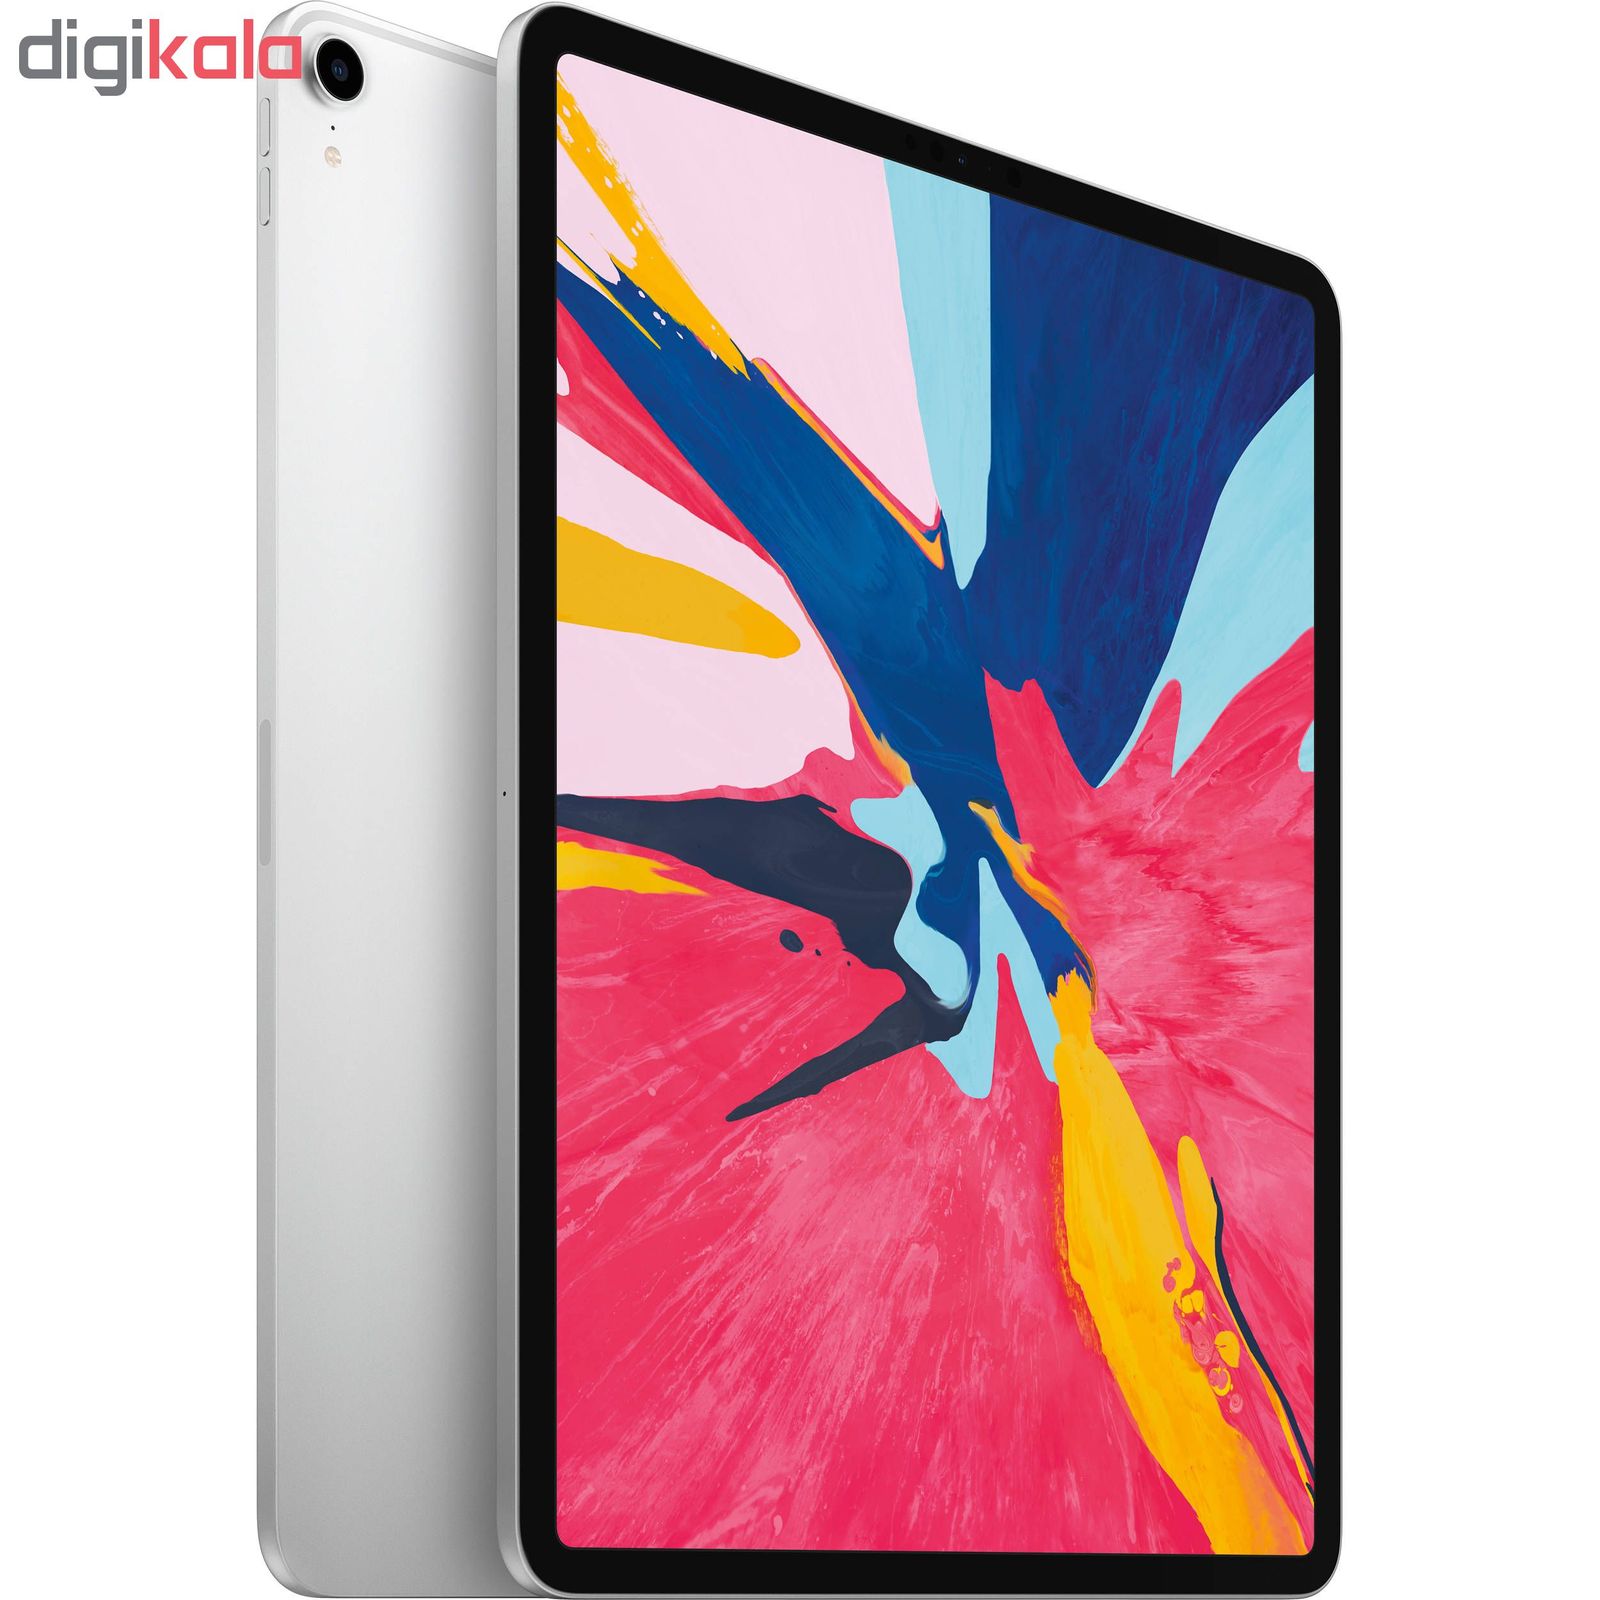  تبلت اپل مدل iPad Pro 2018 12.9 inch WiFi ظرفیت 256 گیگابایت